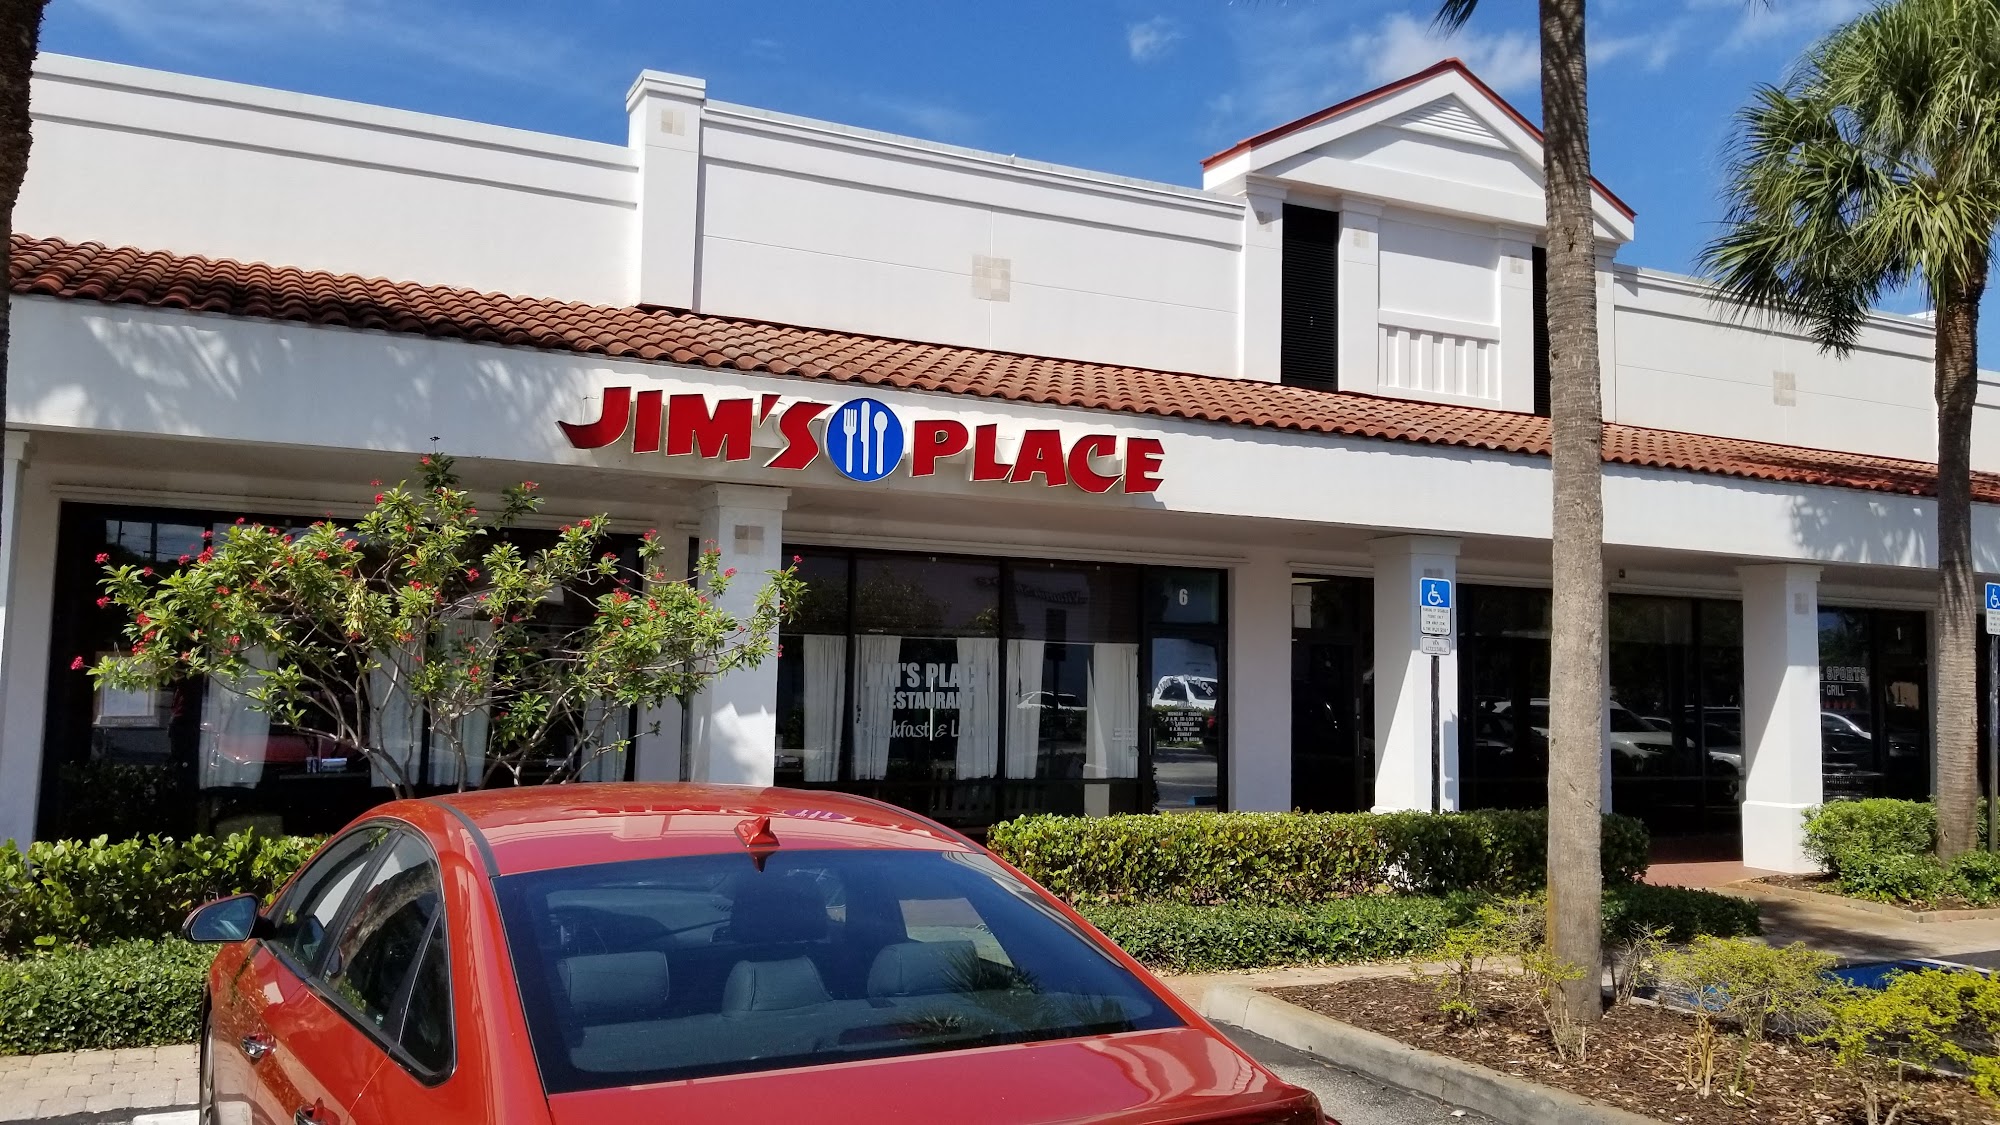 Jim's Place